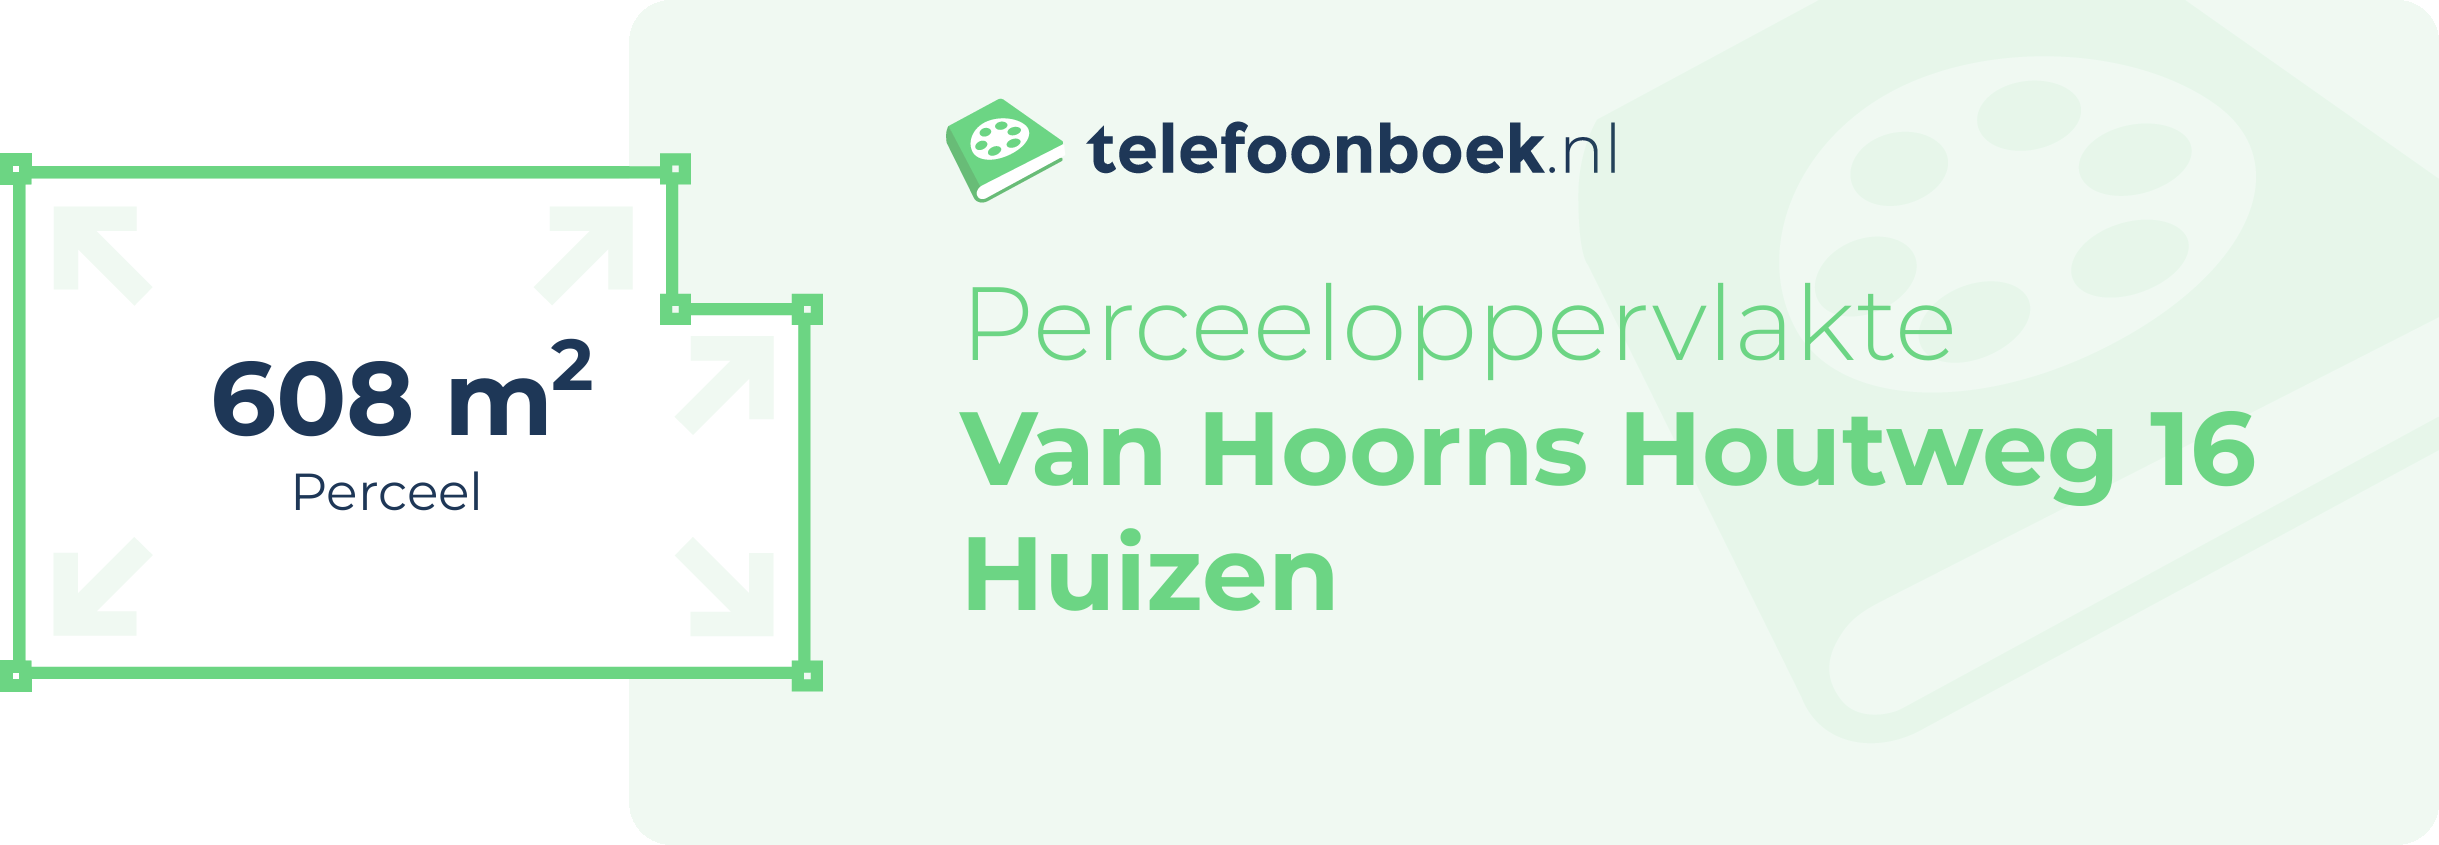 Perceeloppervlakte Van Hoorns Houtweg 16 Huizen